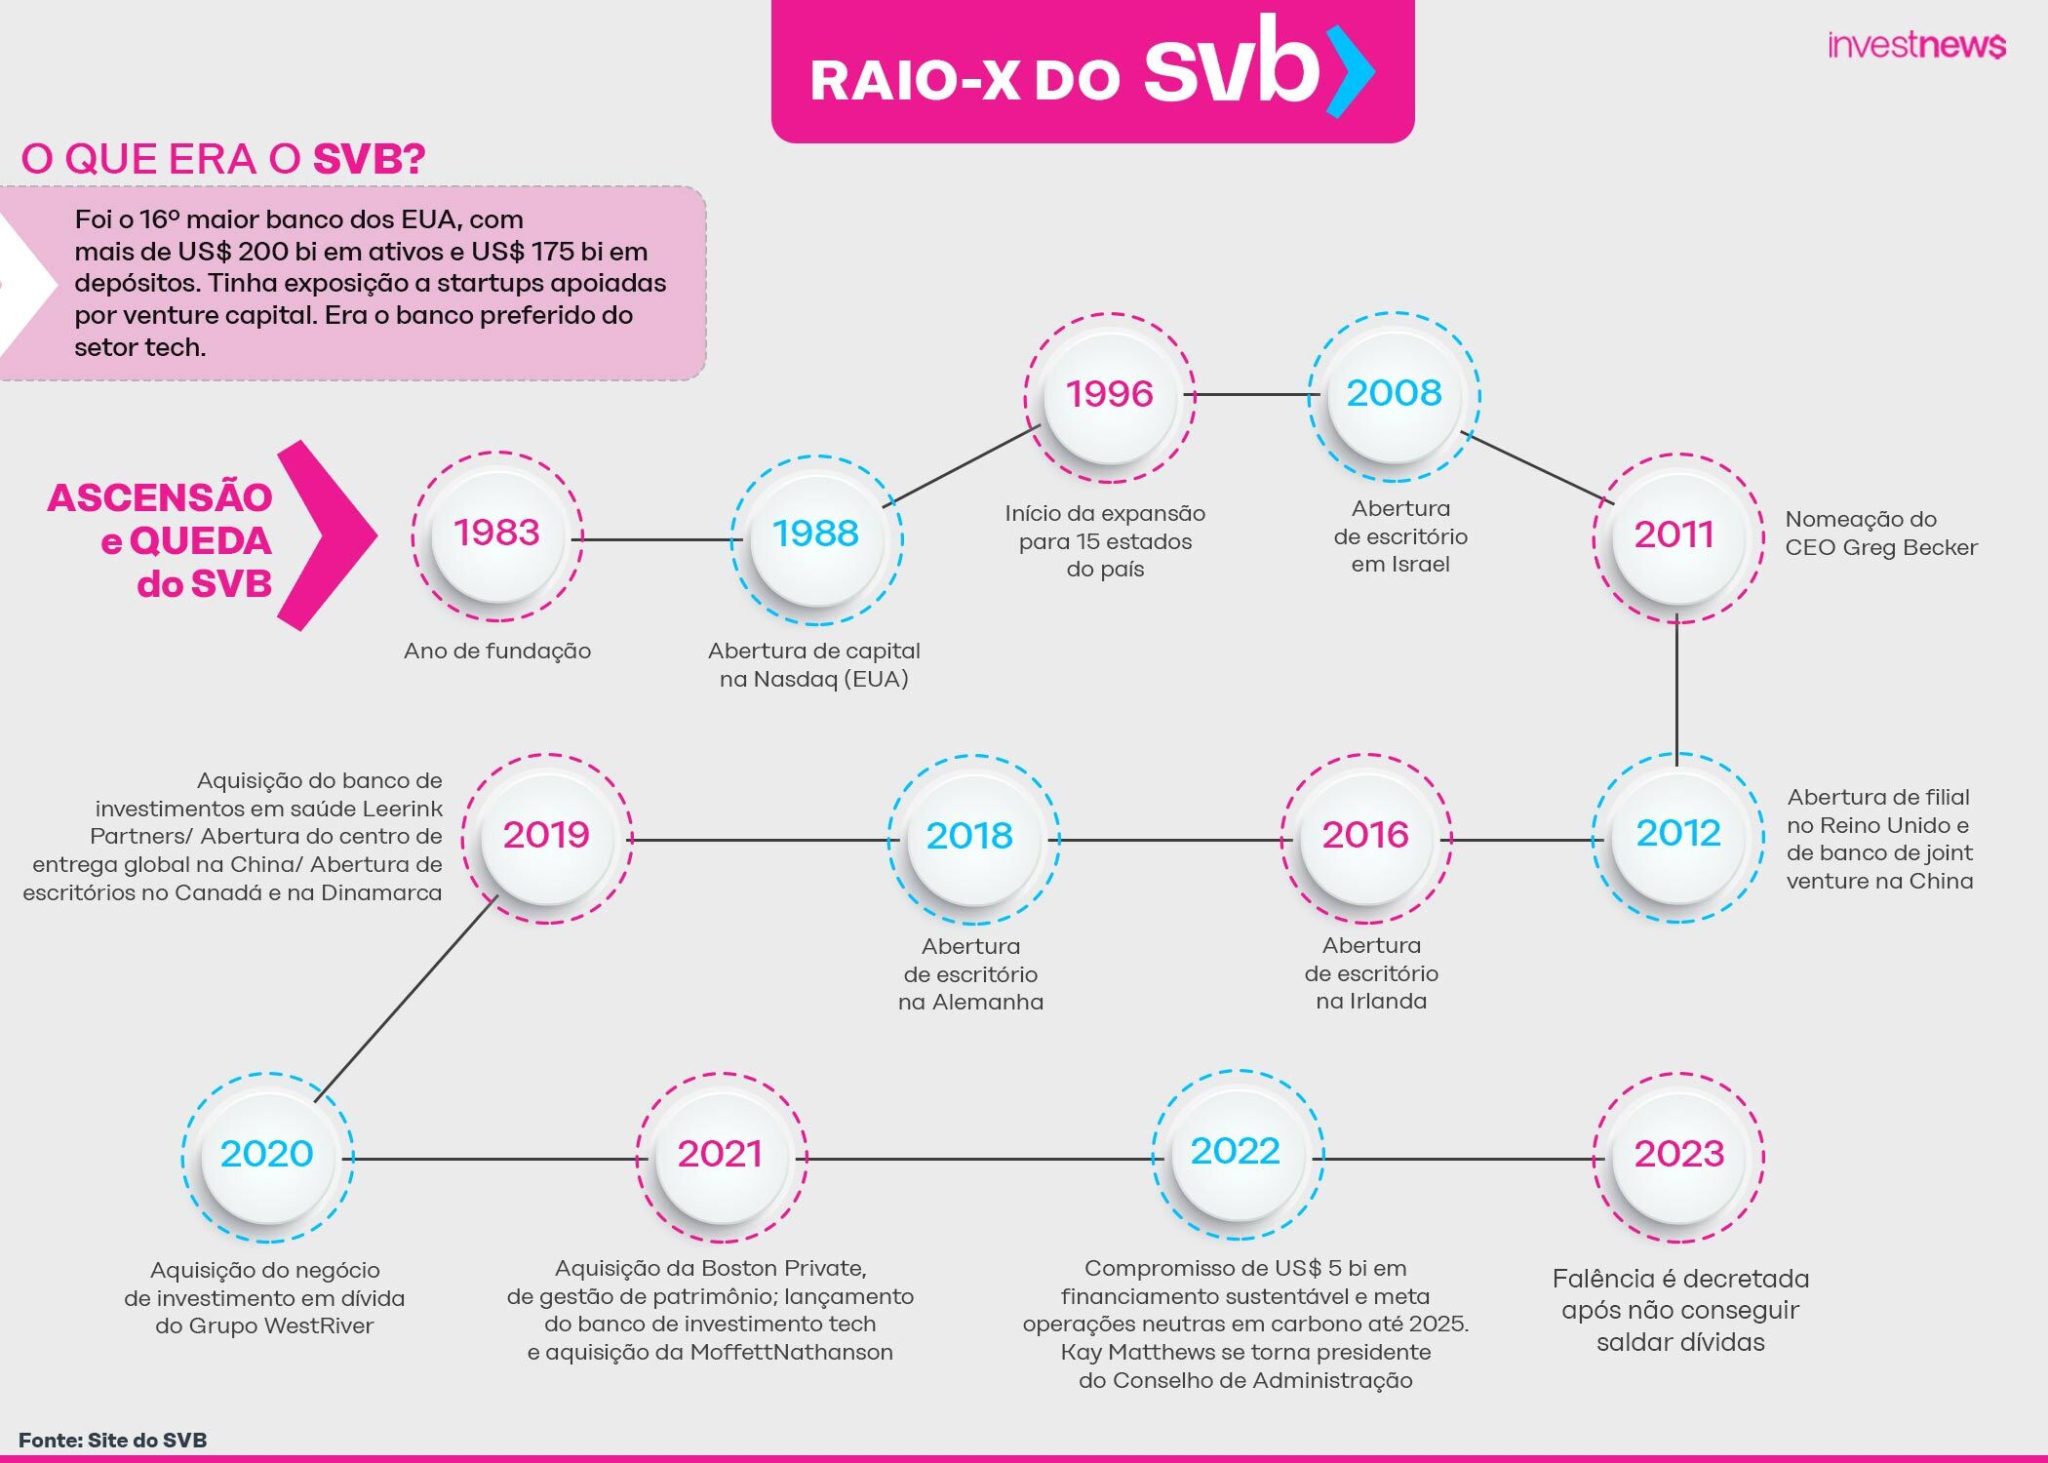 Raio-X do SVB: a trajetória do banco, números e o que causou sua quebra